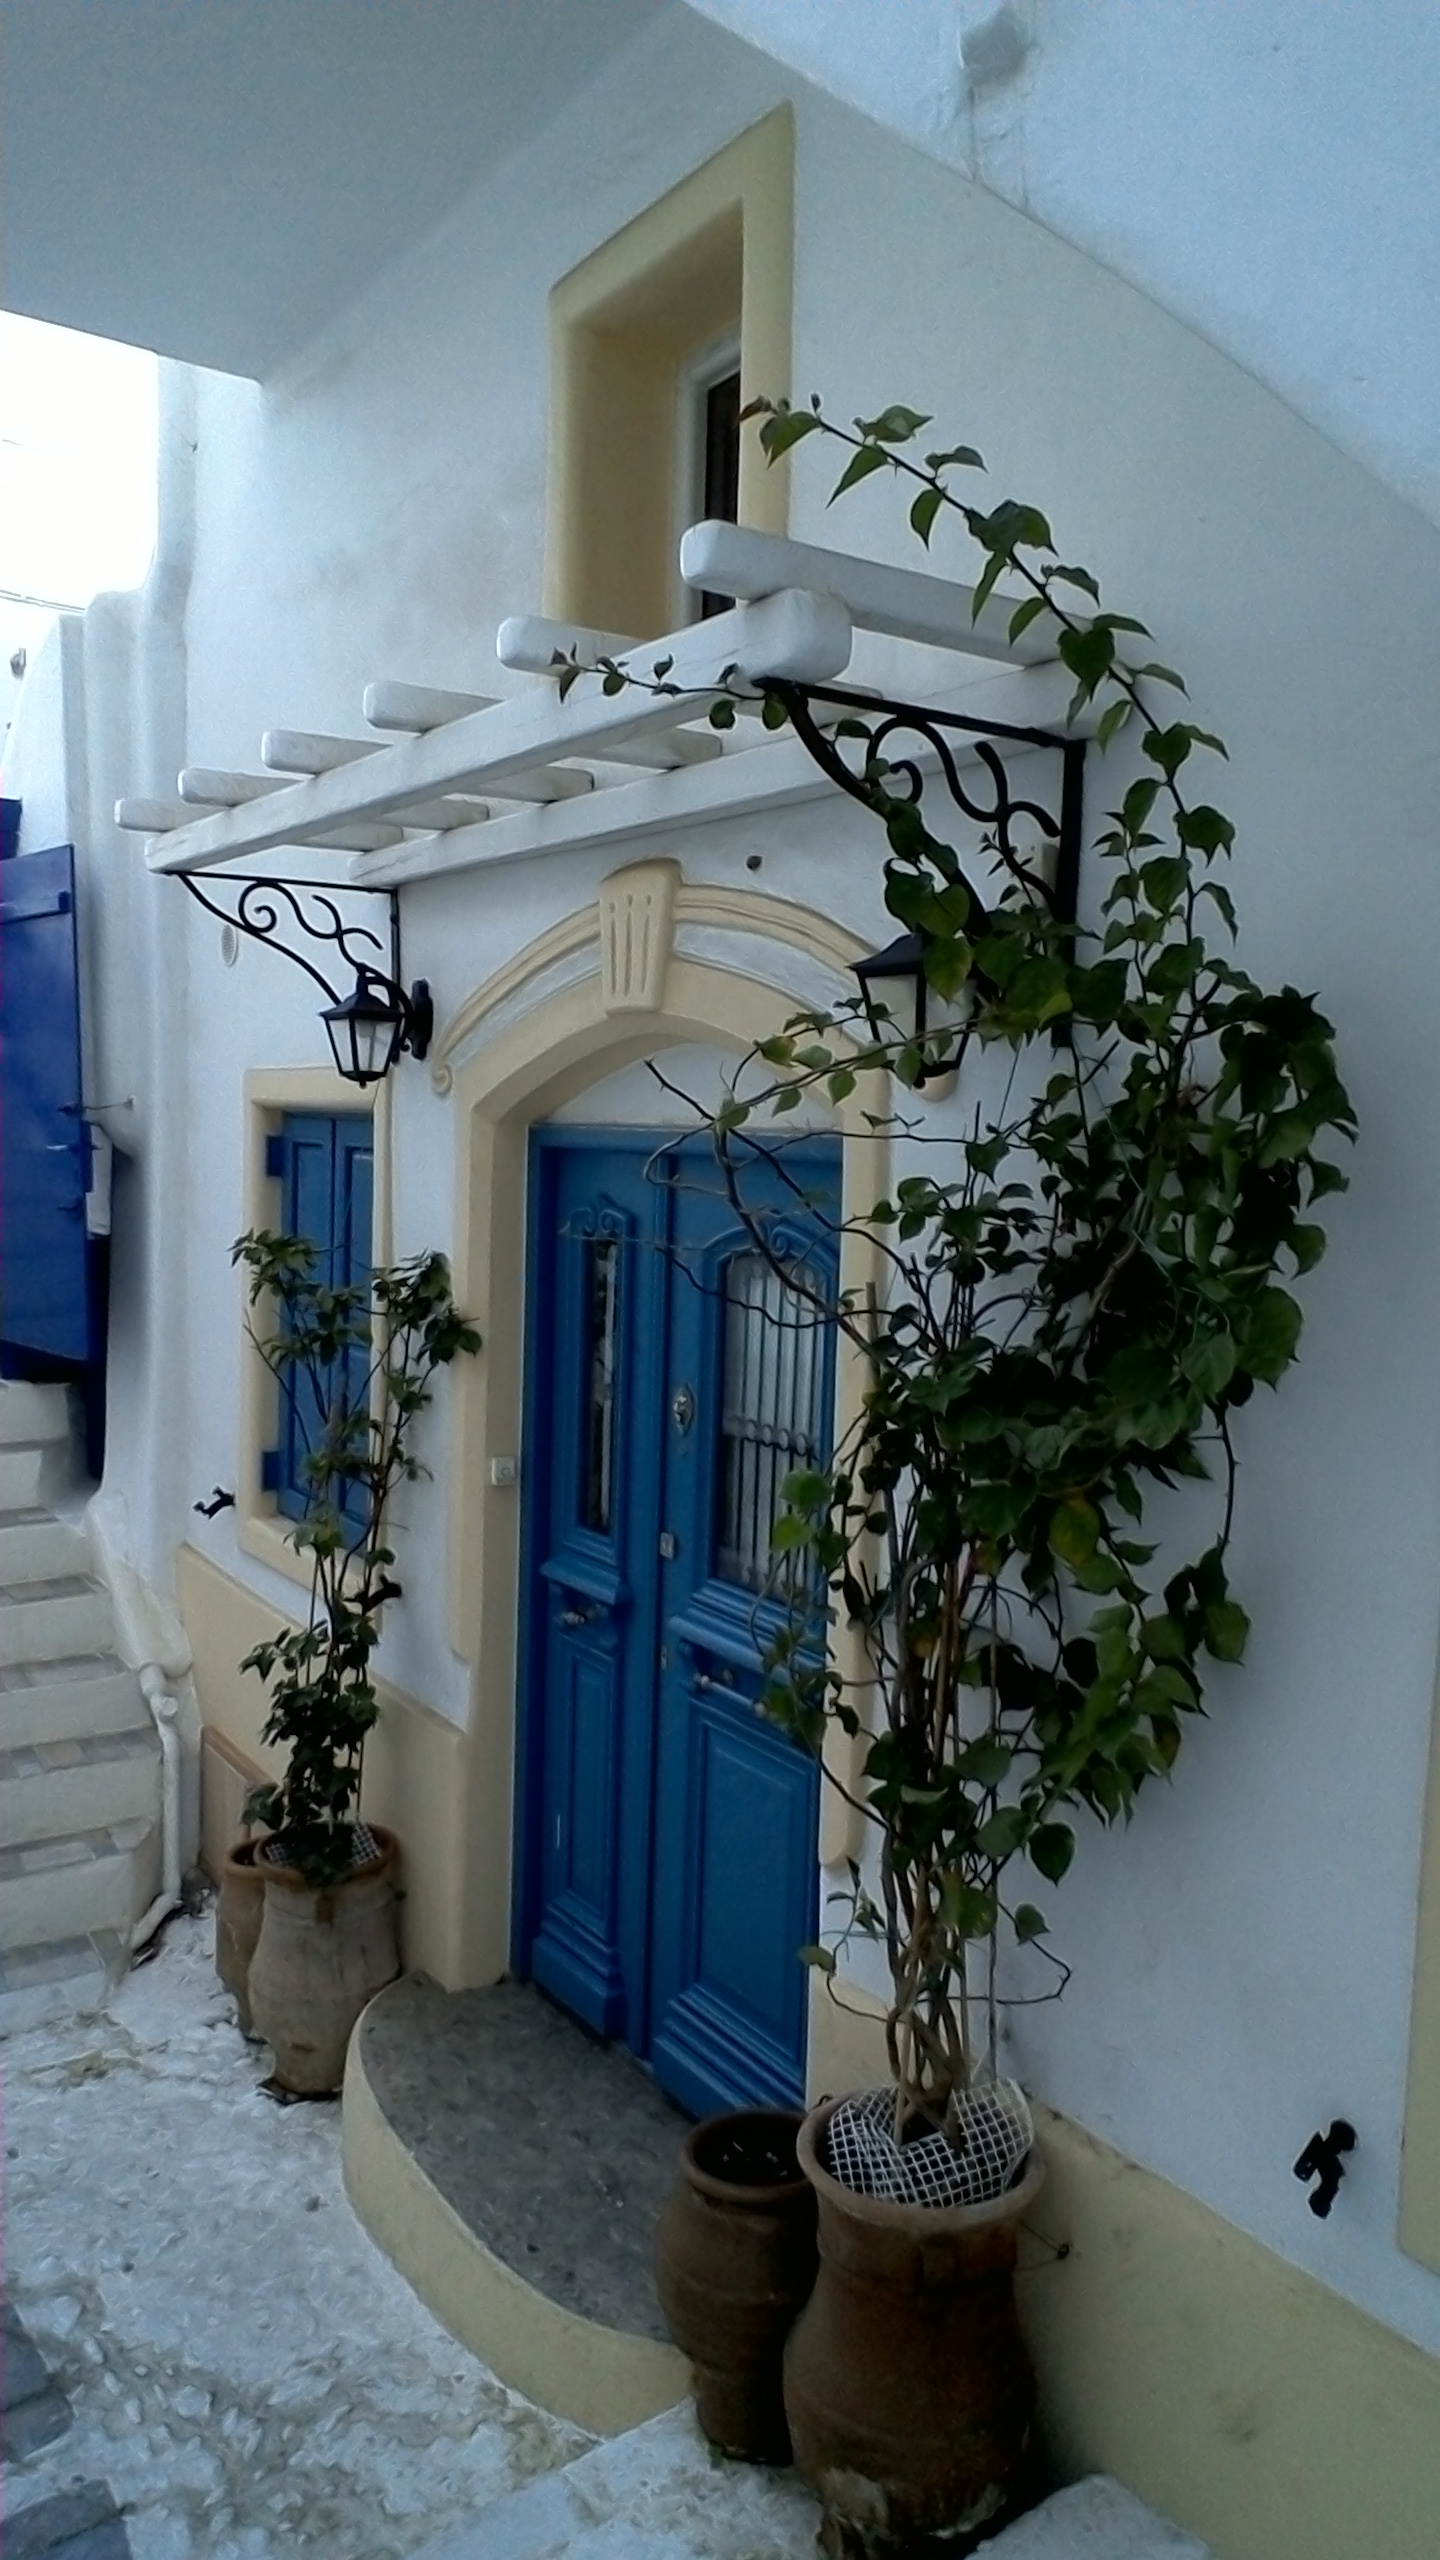 The doors of Mykonos